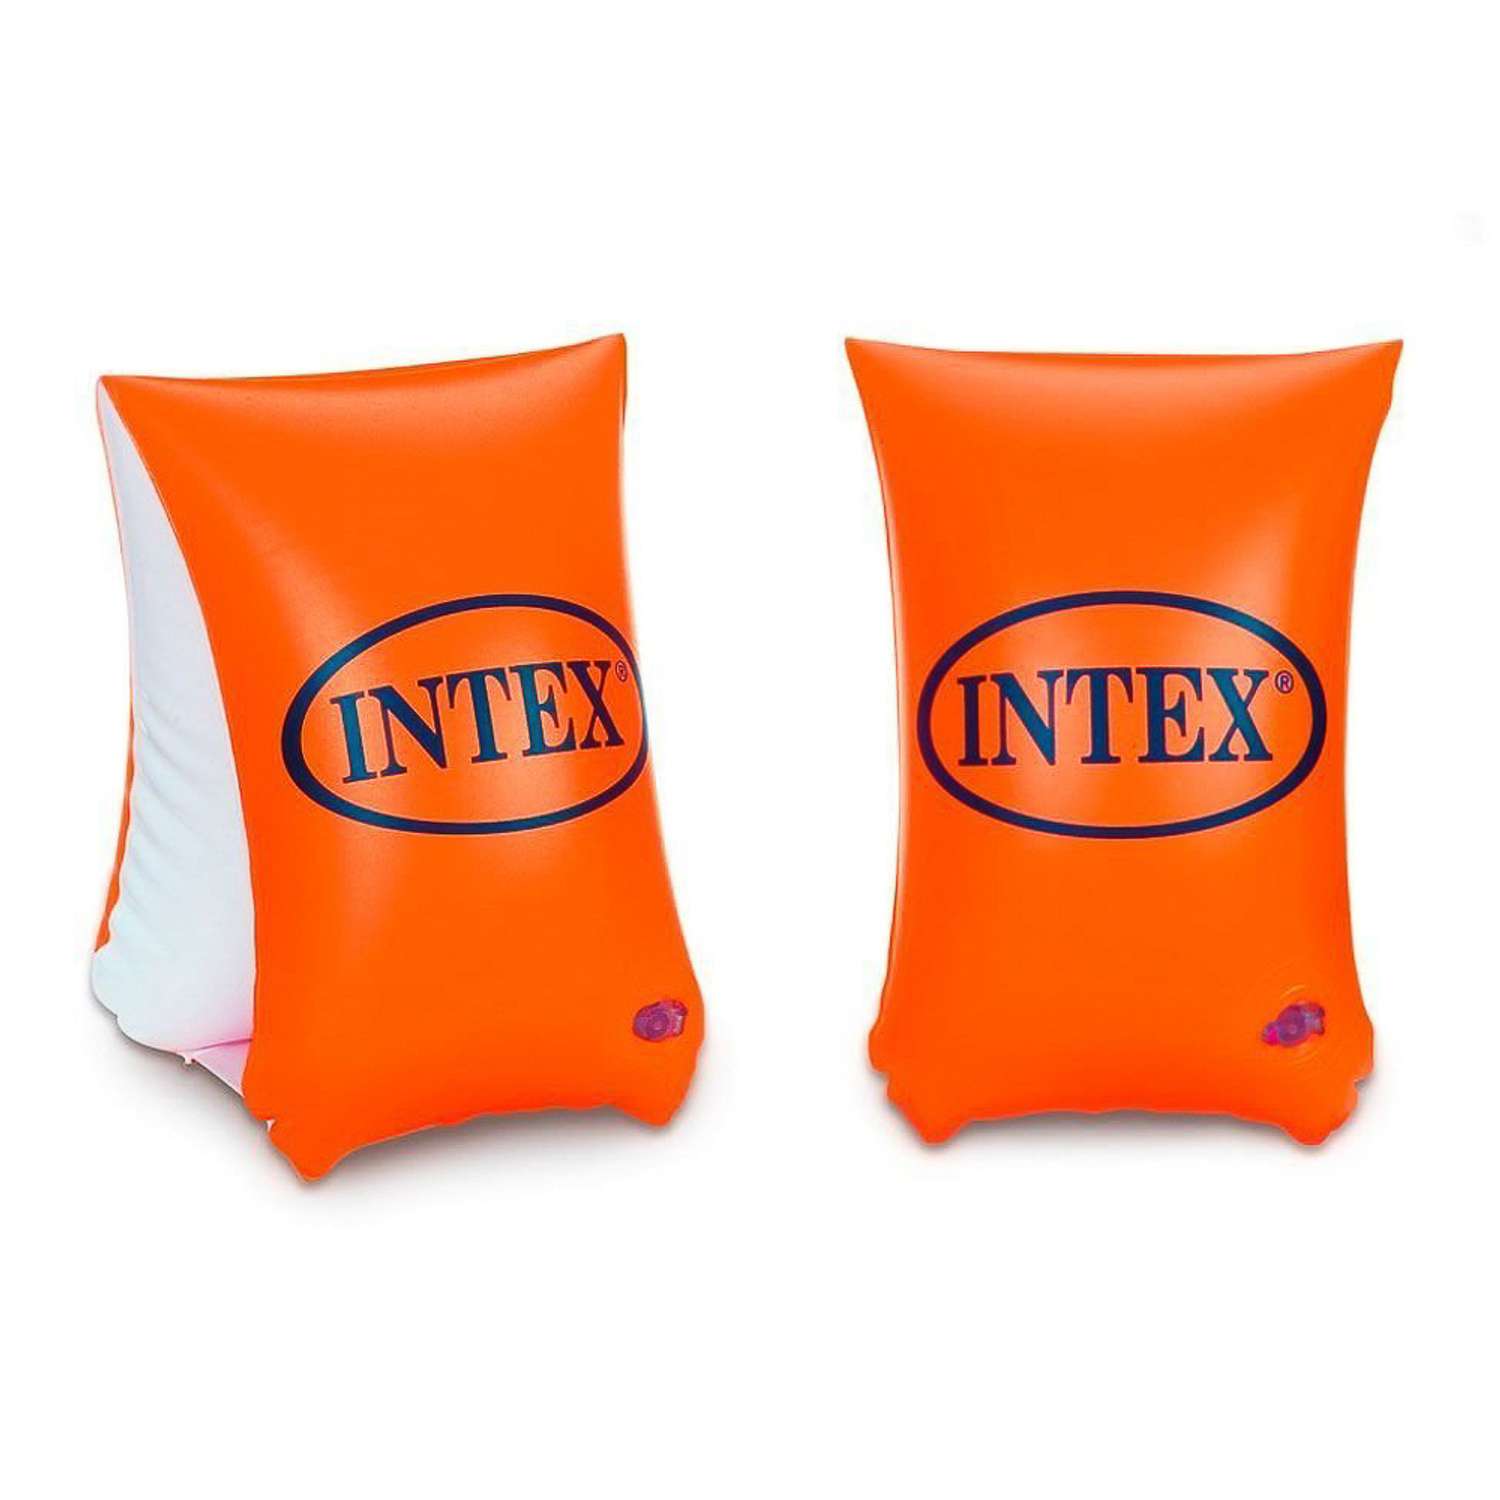 Нарукавники надувные INTEX Deluxe от 6 до 12 лет - фото 1